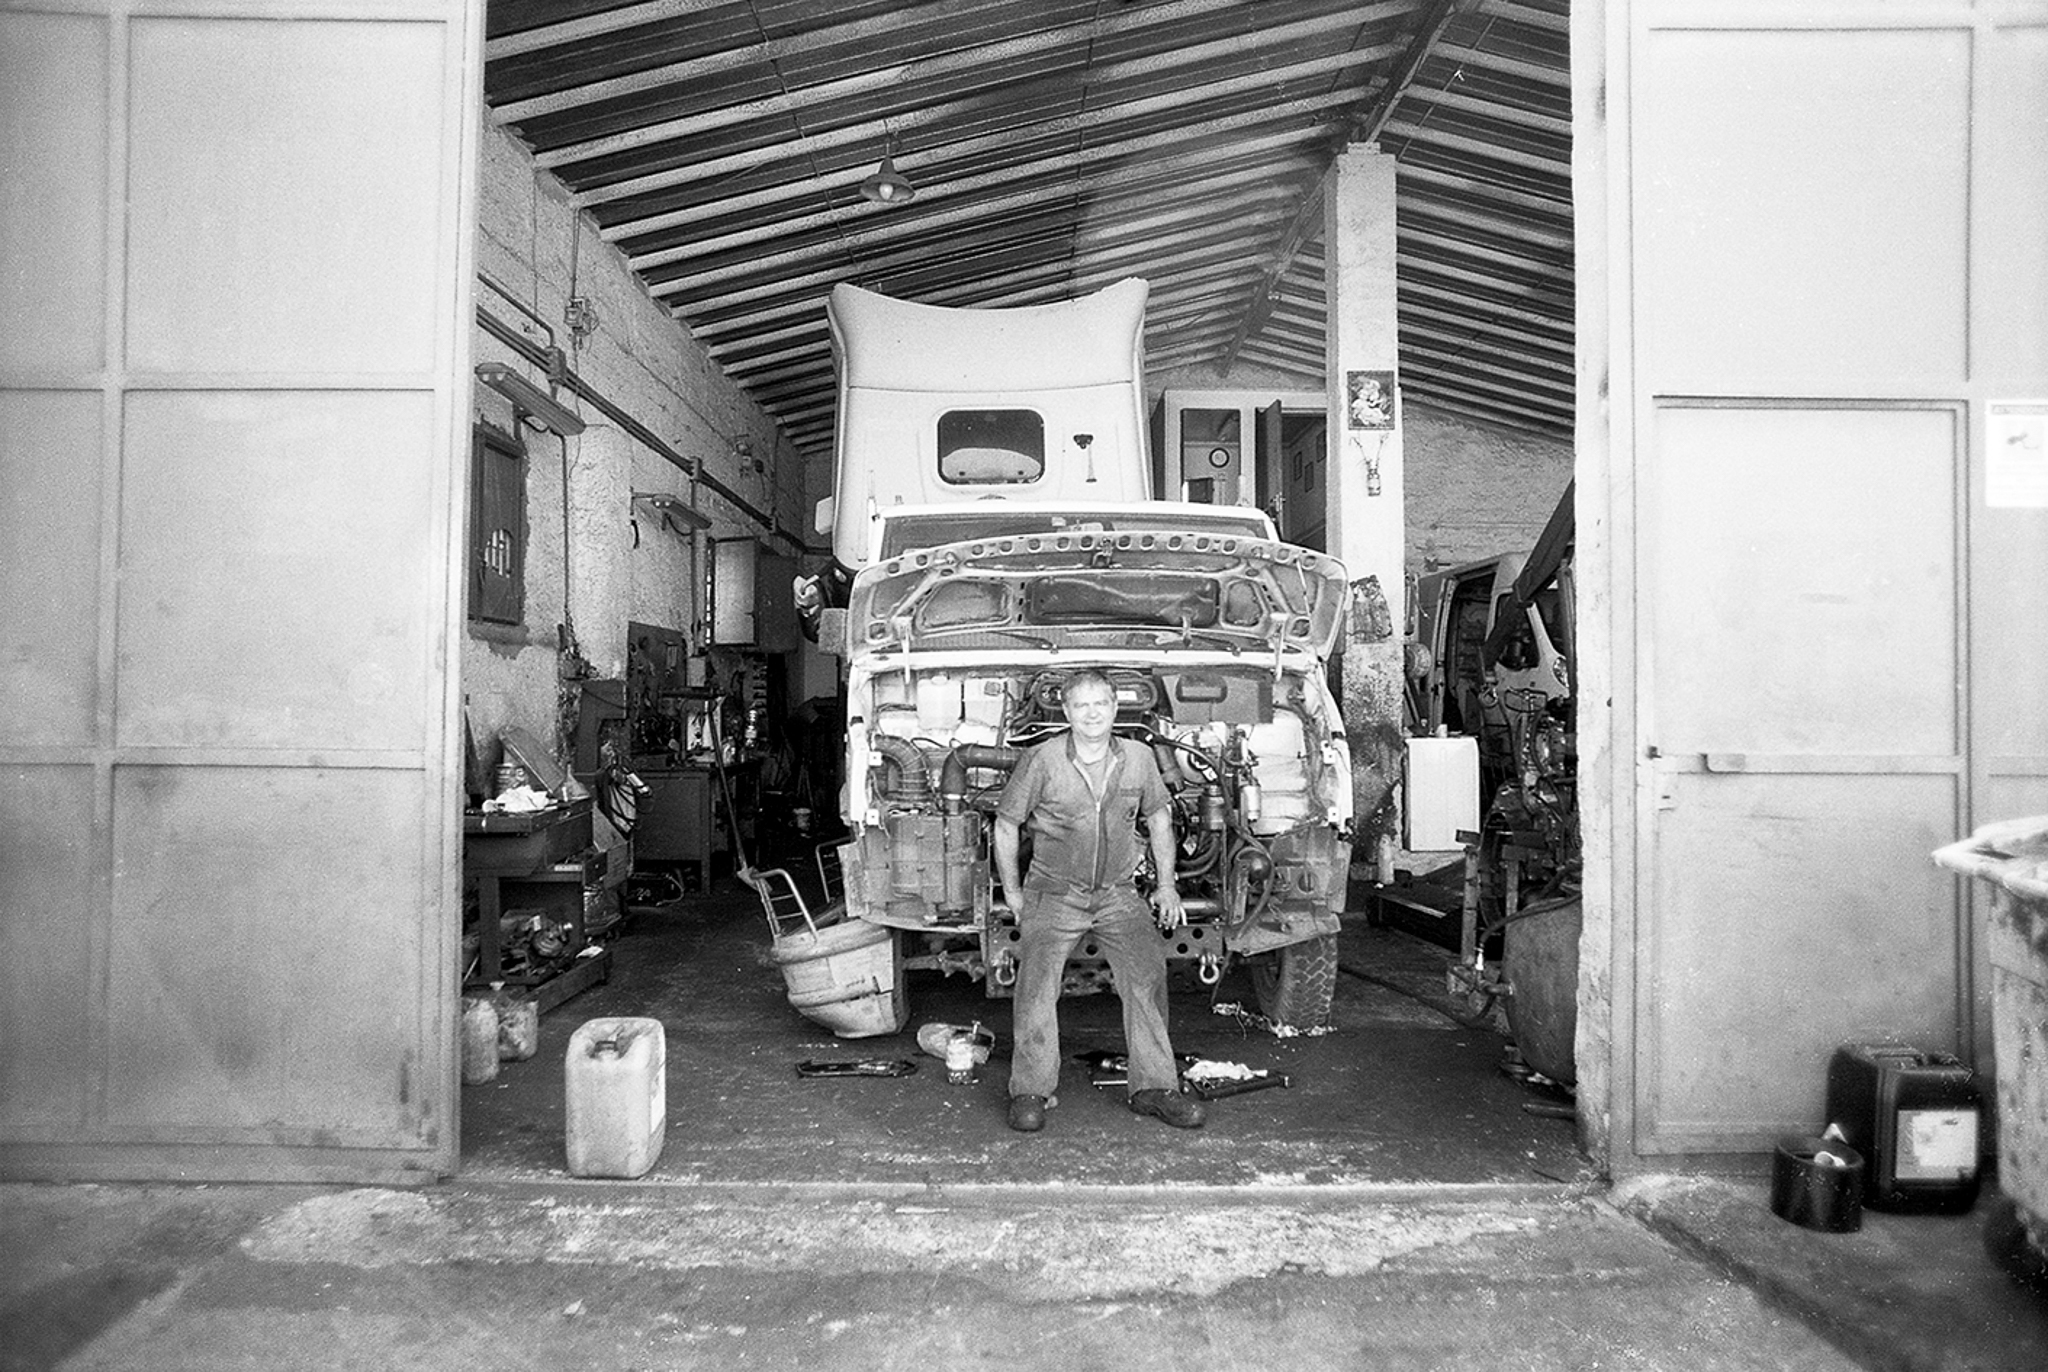 Meccanico di camion in un’officina del quartiere Brancaccio. Palermo, 2017